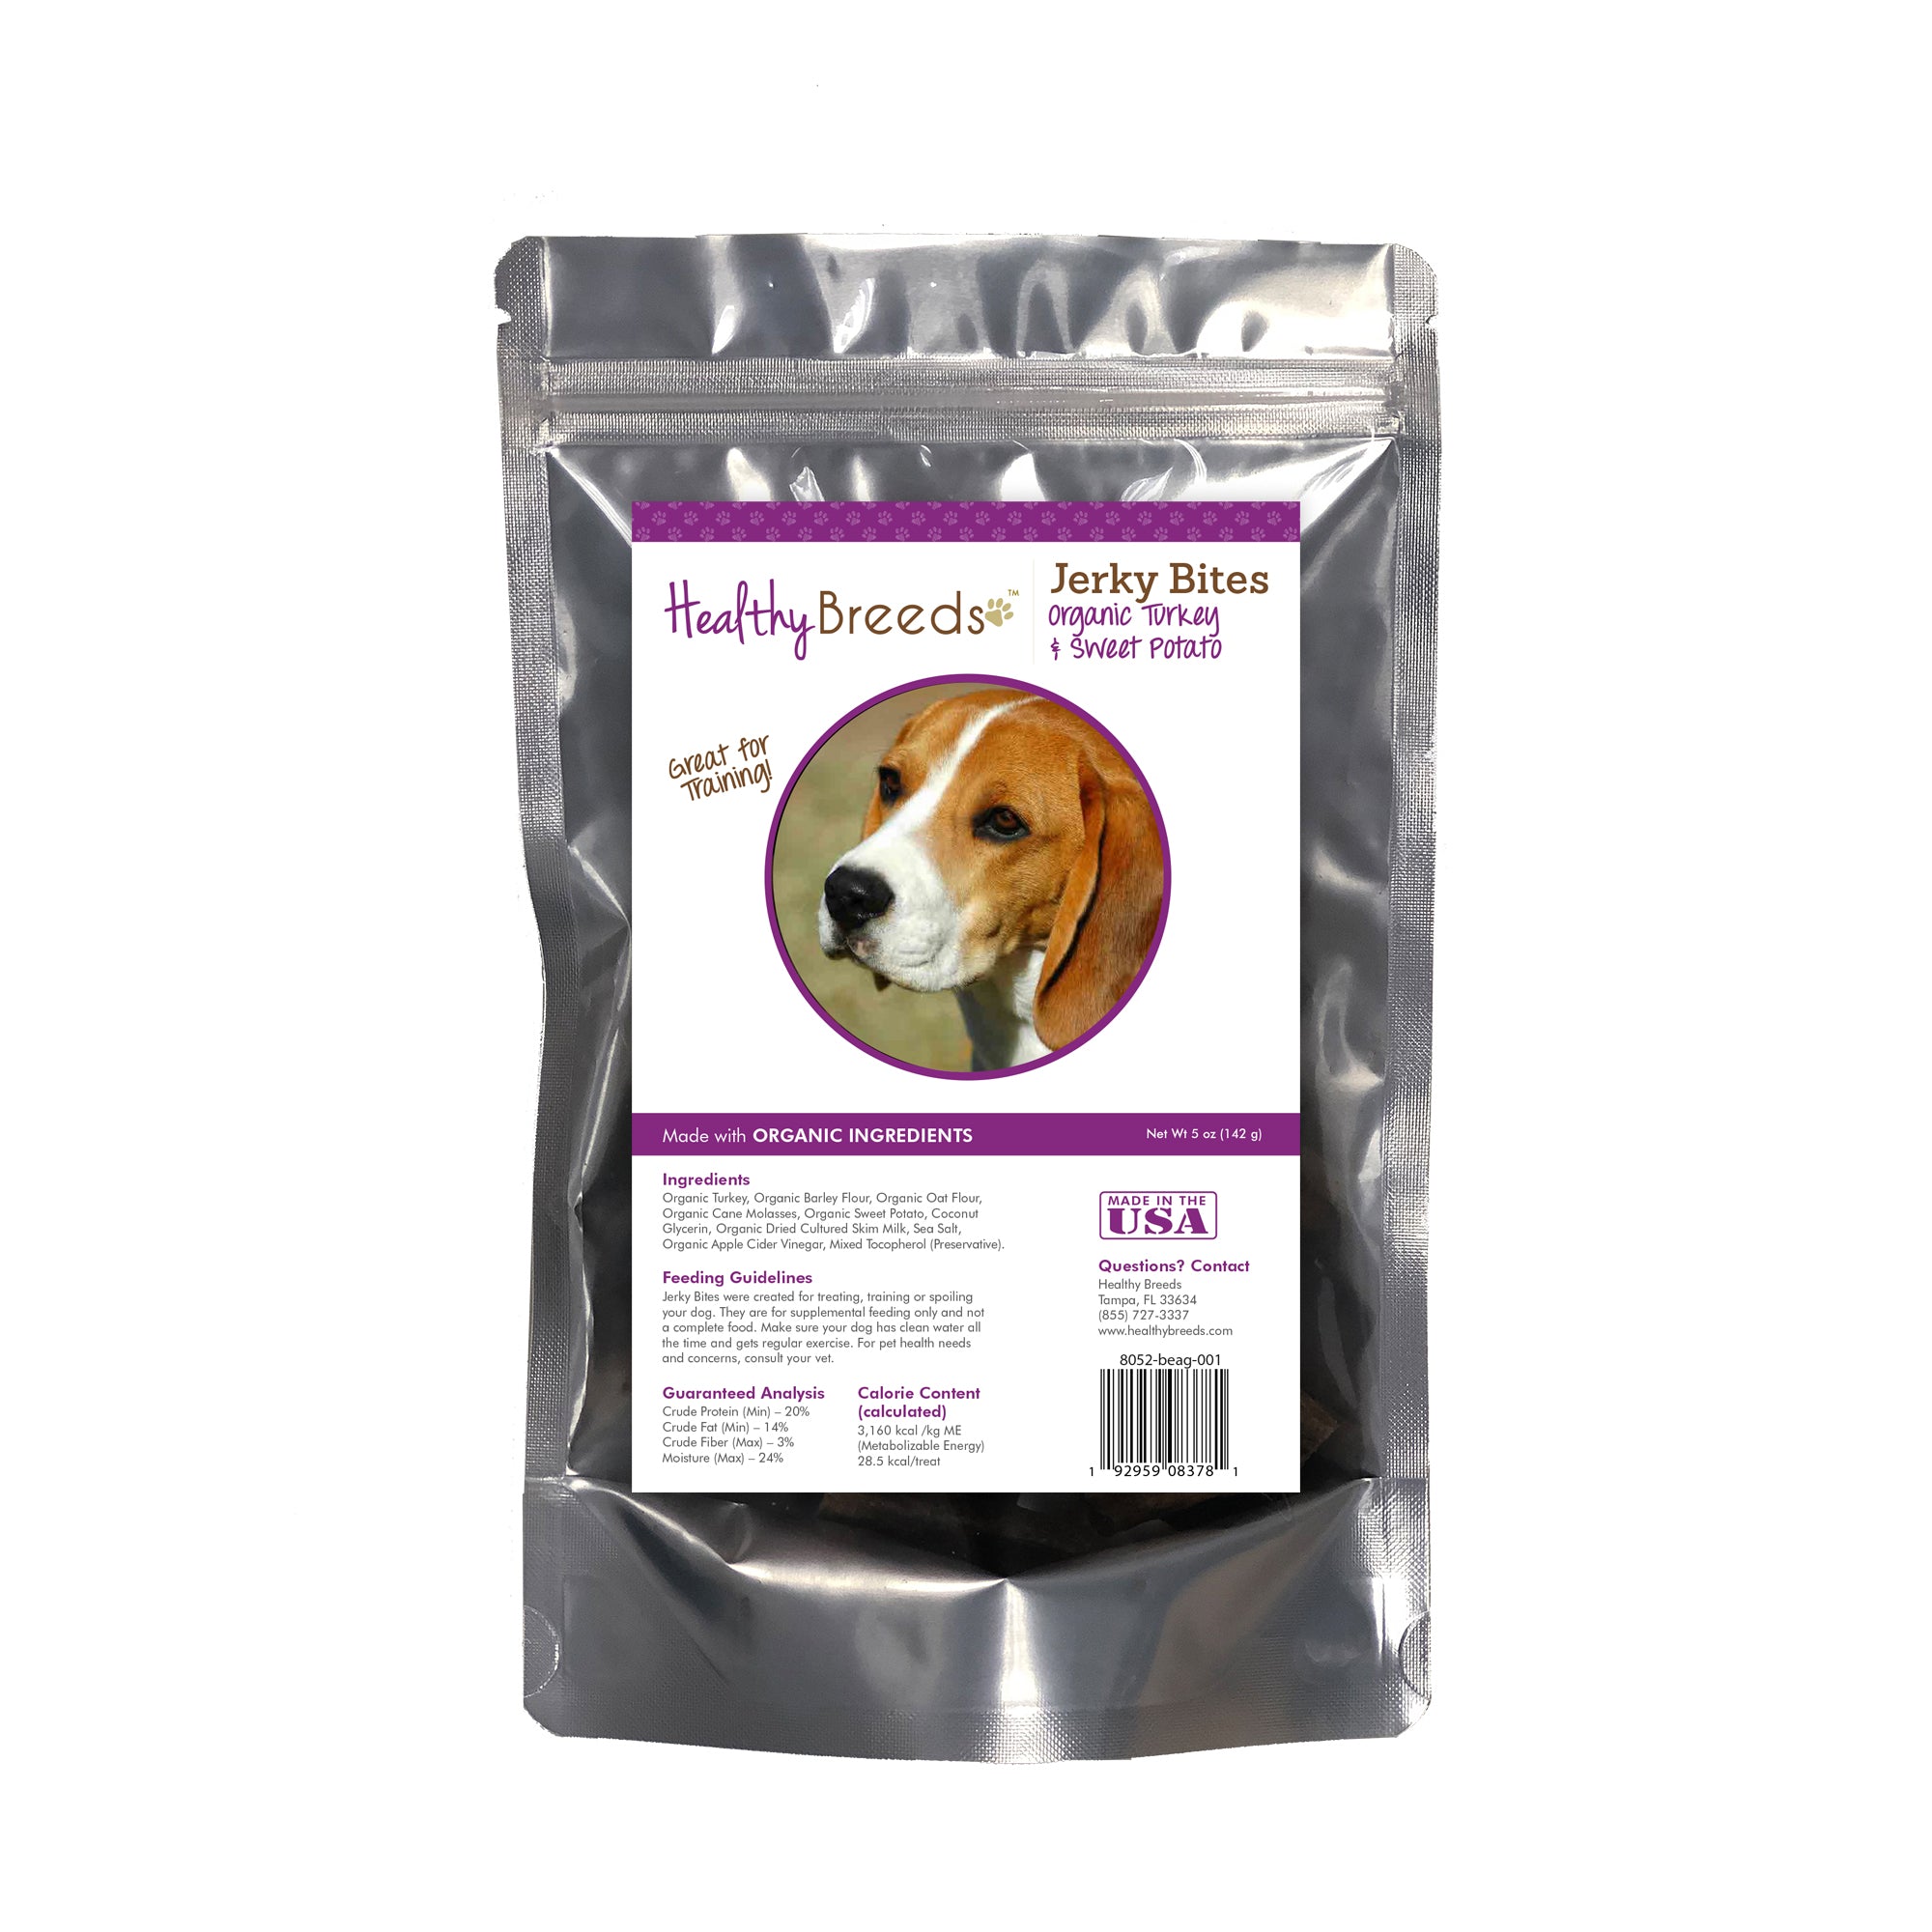 Healthy Breeds Jerky Bites Turkey & Sweet Potato Dog Treats - Beagle